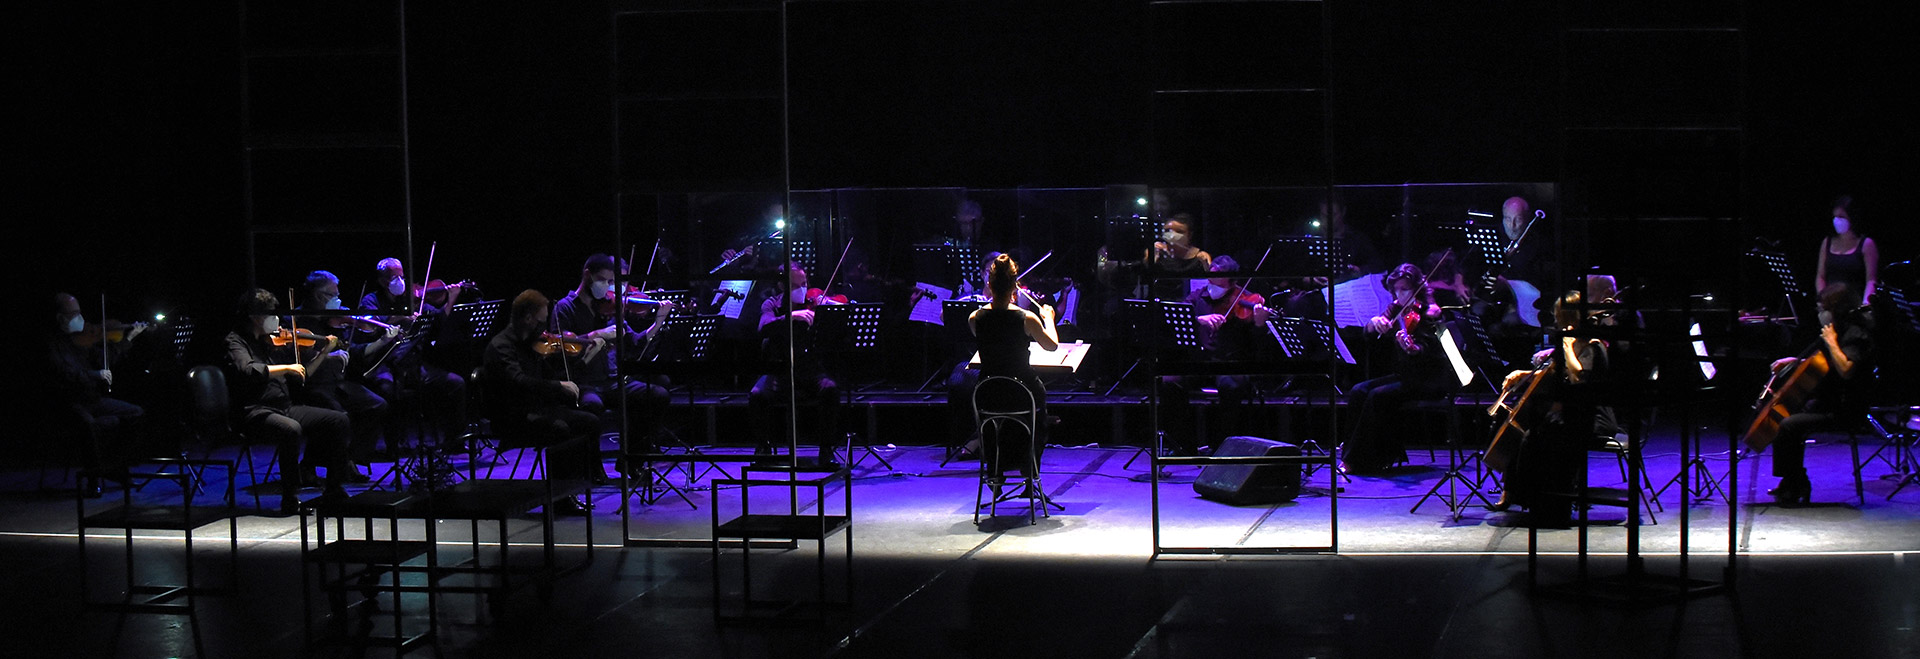 Orquestra Sinfônica da Unicamp durante a apresentação da ópera "A Moreninha", em fevereiro de 2022. (Foto: Antonio Scarpinetti)